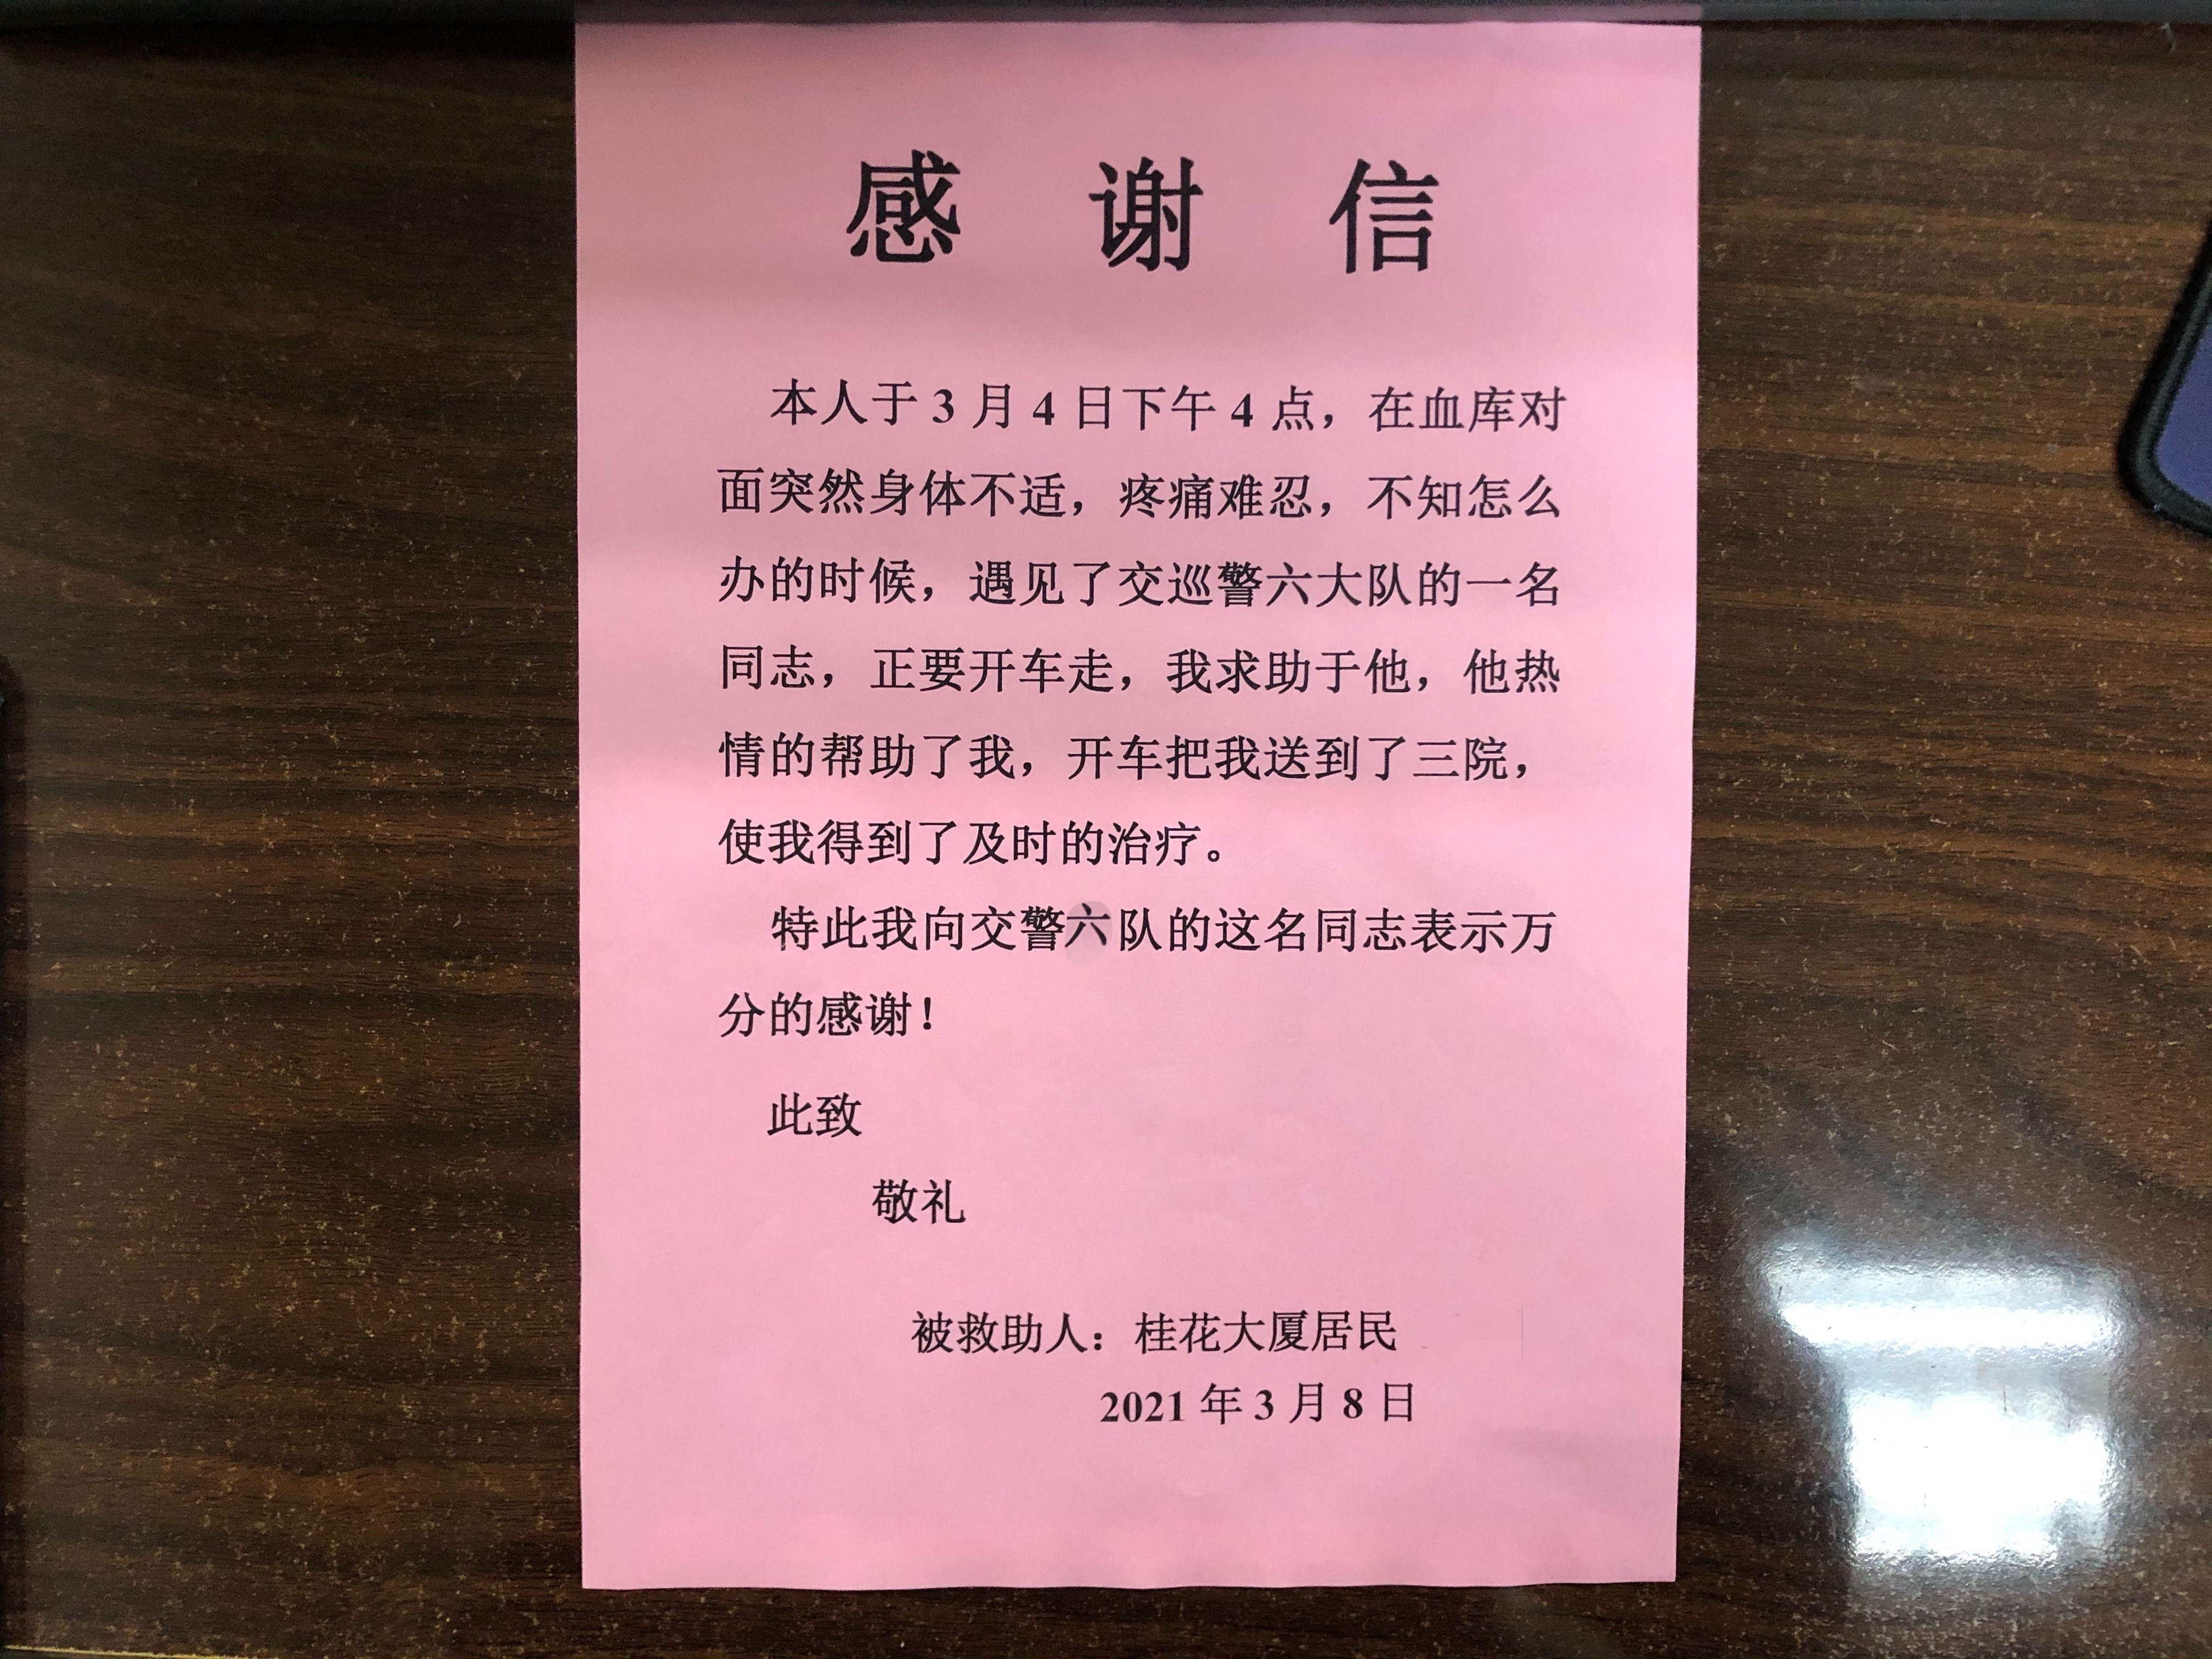 【B】重慶渝中民警暖心送醫 受助老人送感謝信